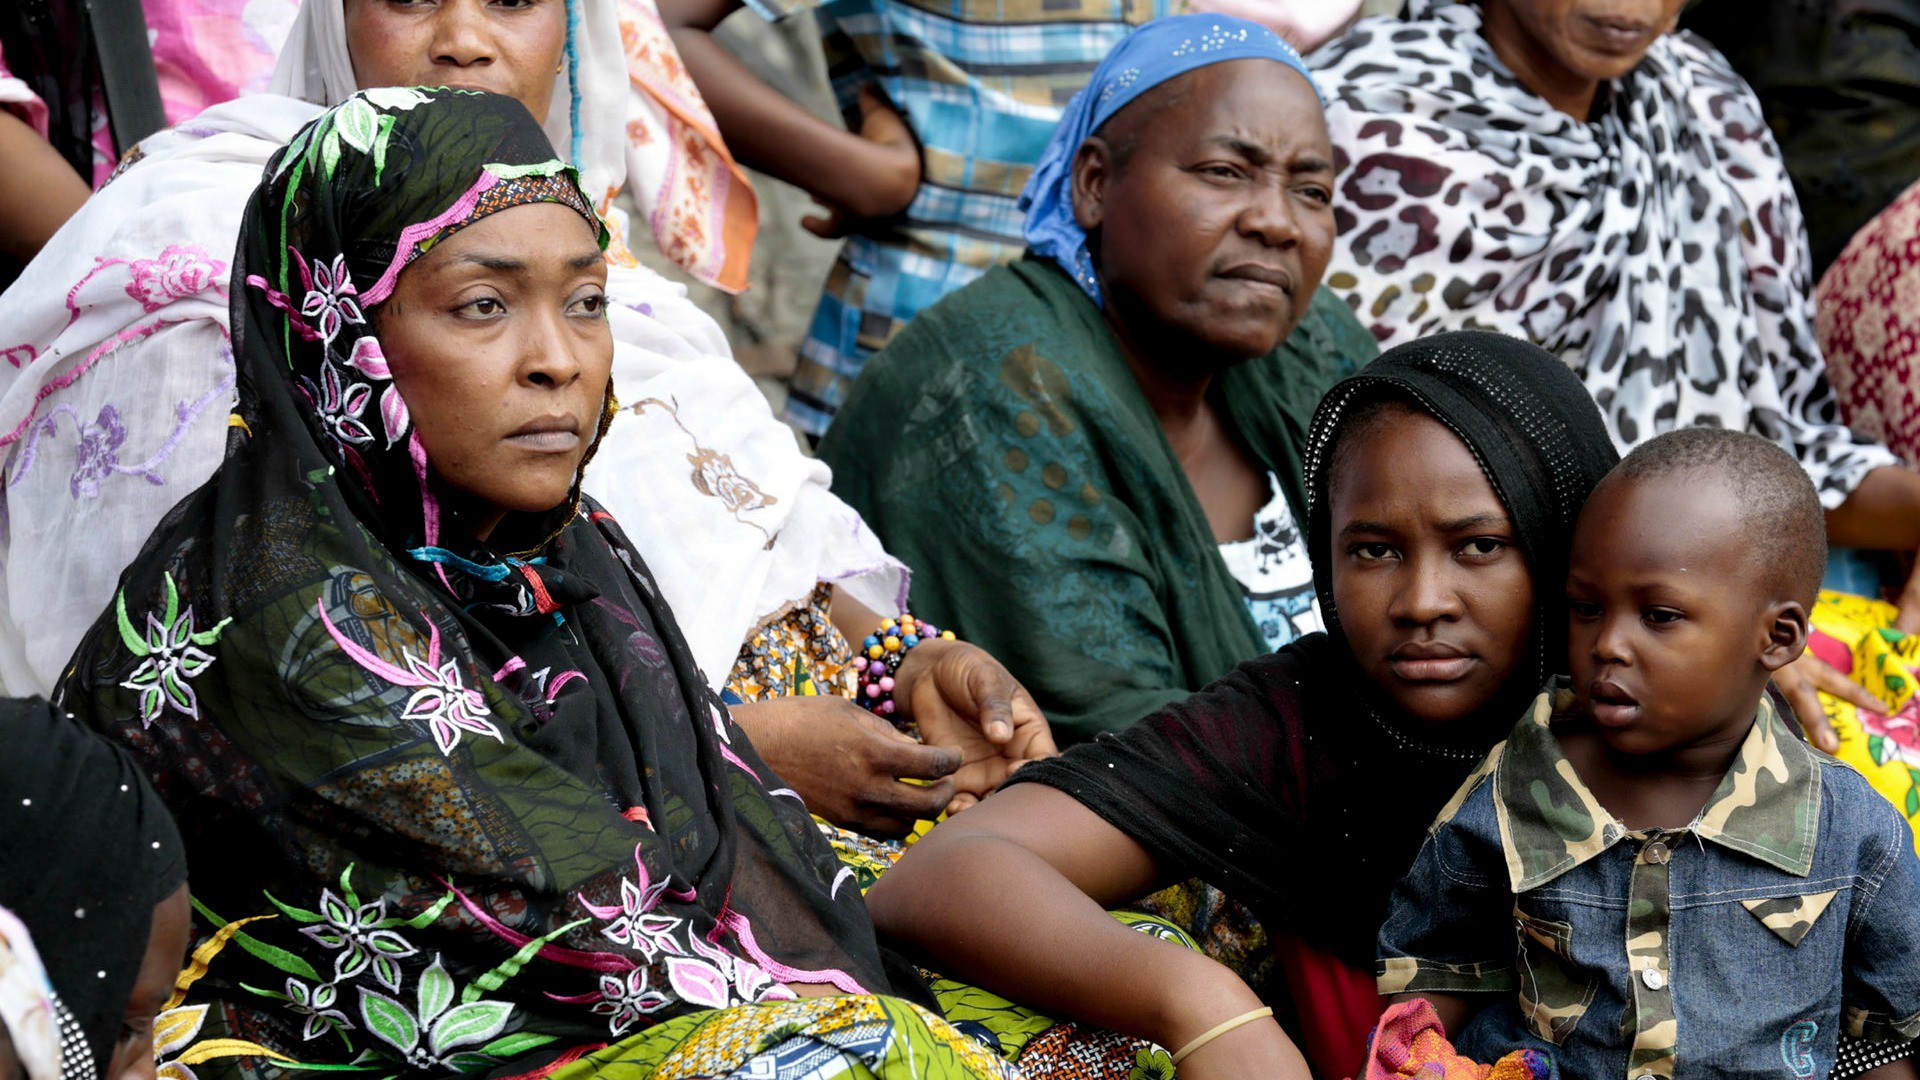 A Bangui, chrétiens et musulmans recommencent à vivre ensemble (Photo d'illustration:United Nations Photos/Flickr/CC BY-NC-ND, 2.0)